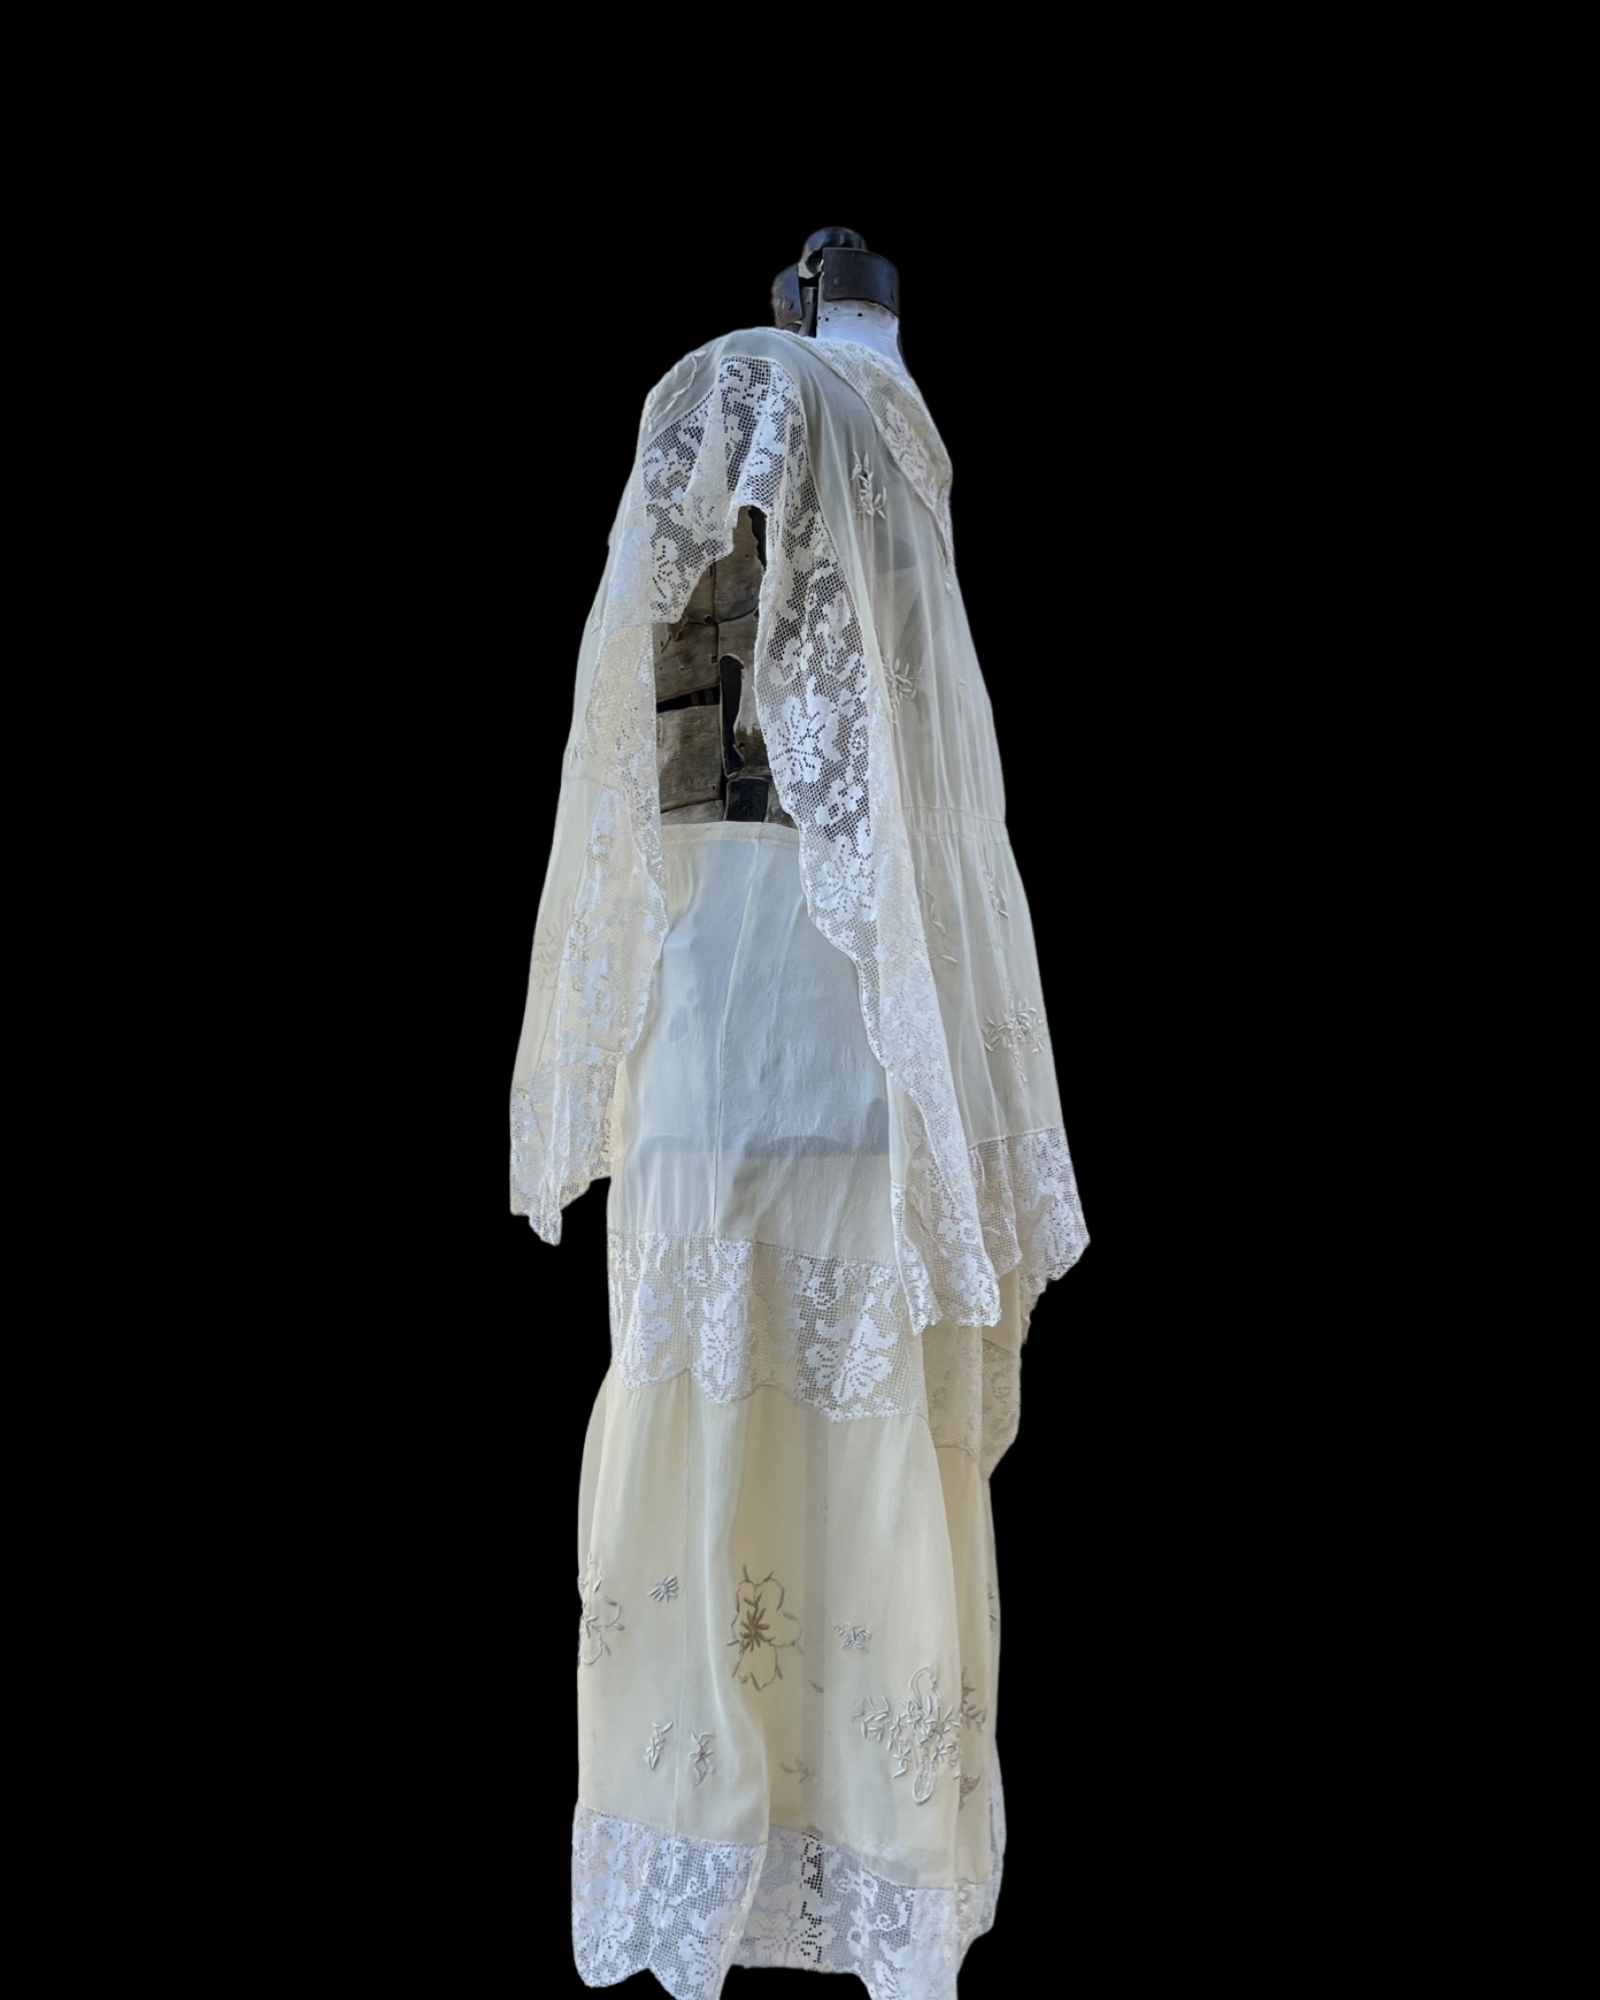 Late Edwardian Chiffon & Filet Lace Two Piece Dress